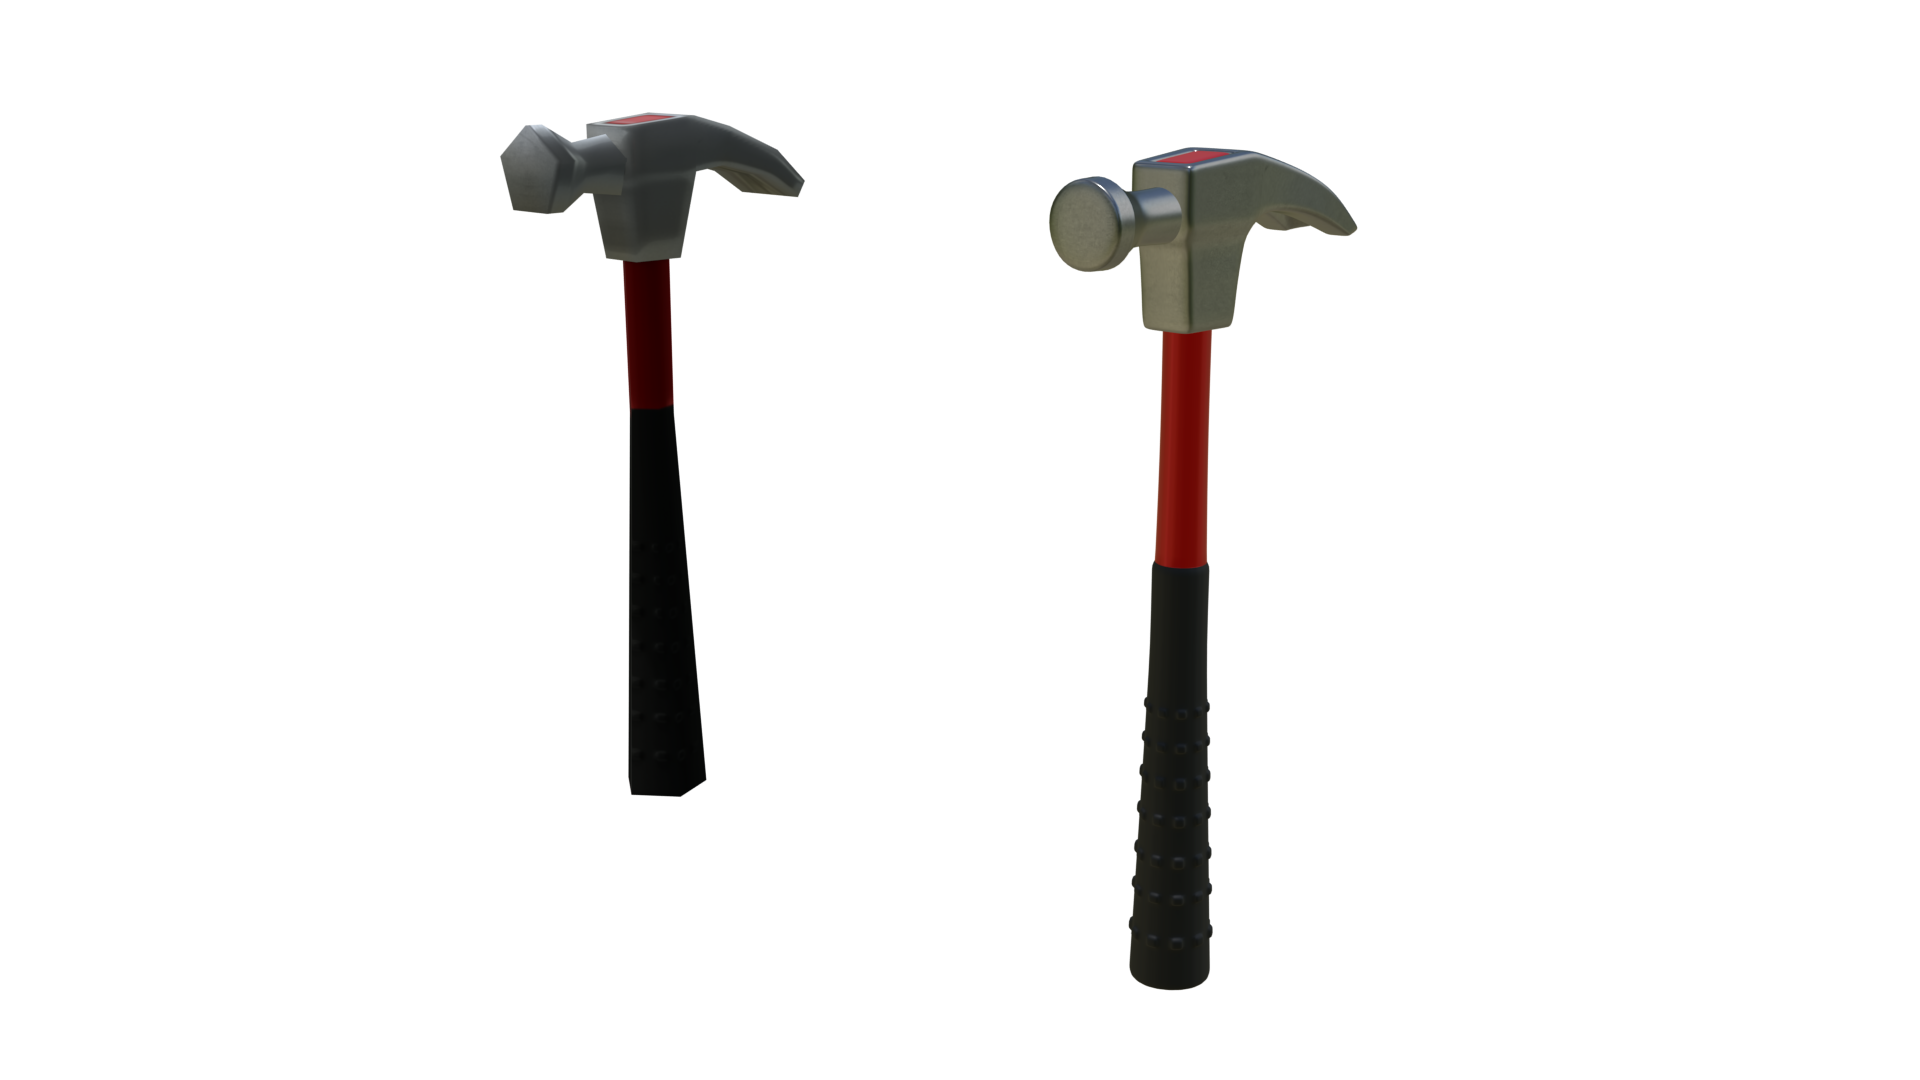 Hammer - Basic - Modern preview image 1